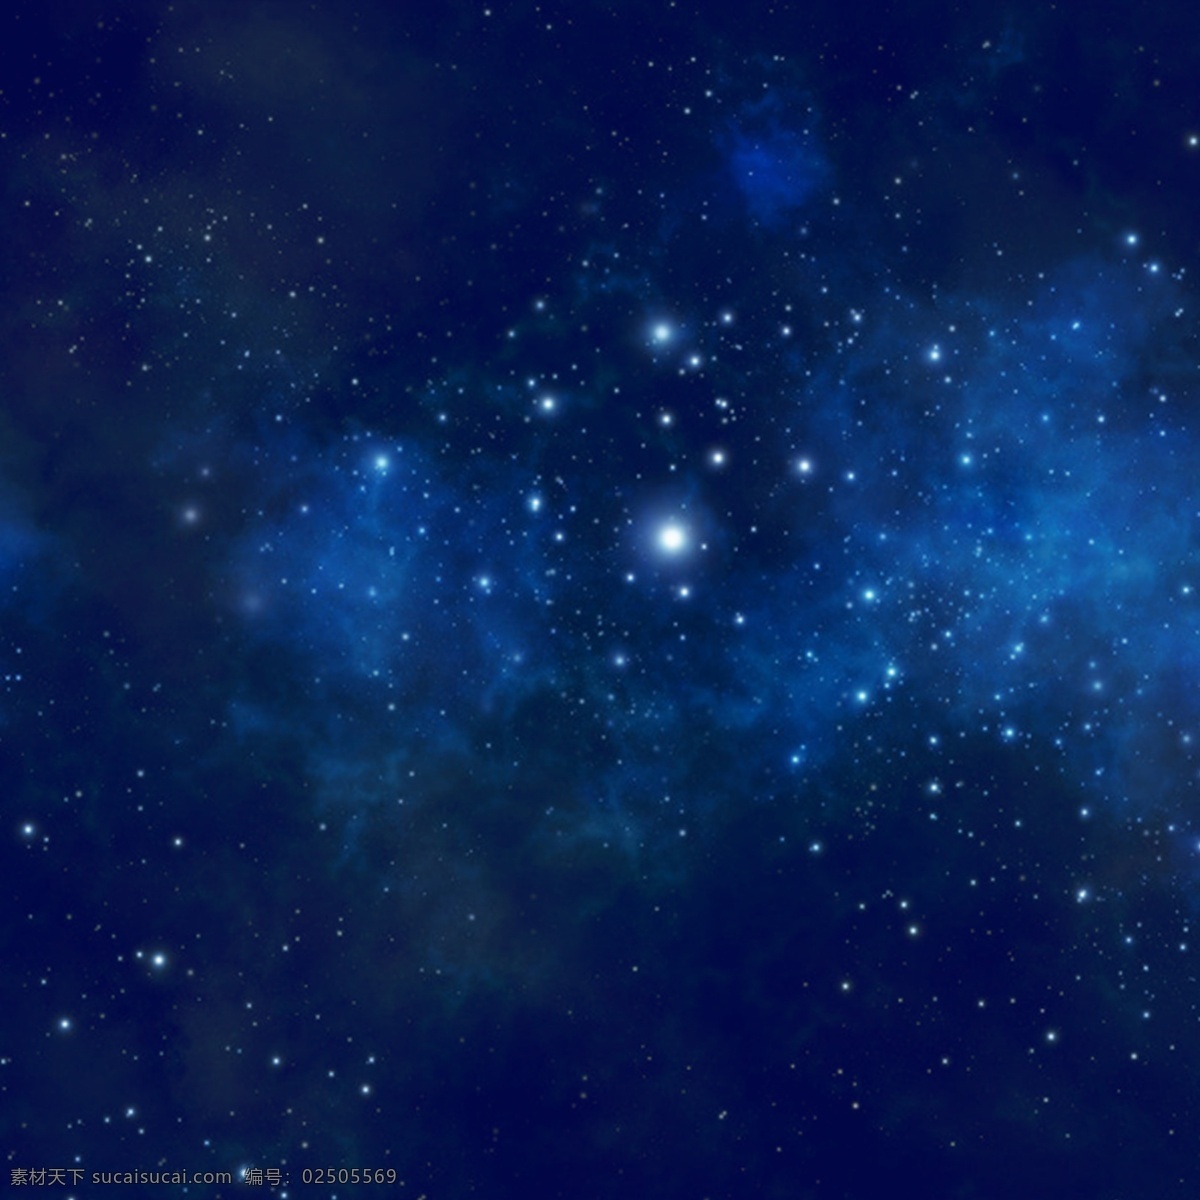 蓝色 星空 背景 璀璨背景主图 科技背景主图 太空 星际主图 星空背景图 星云 银河系主图 自然景观